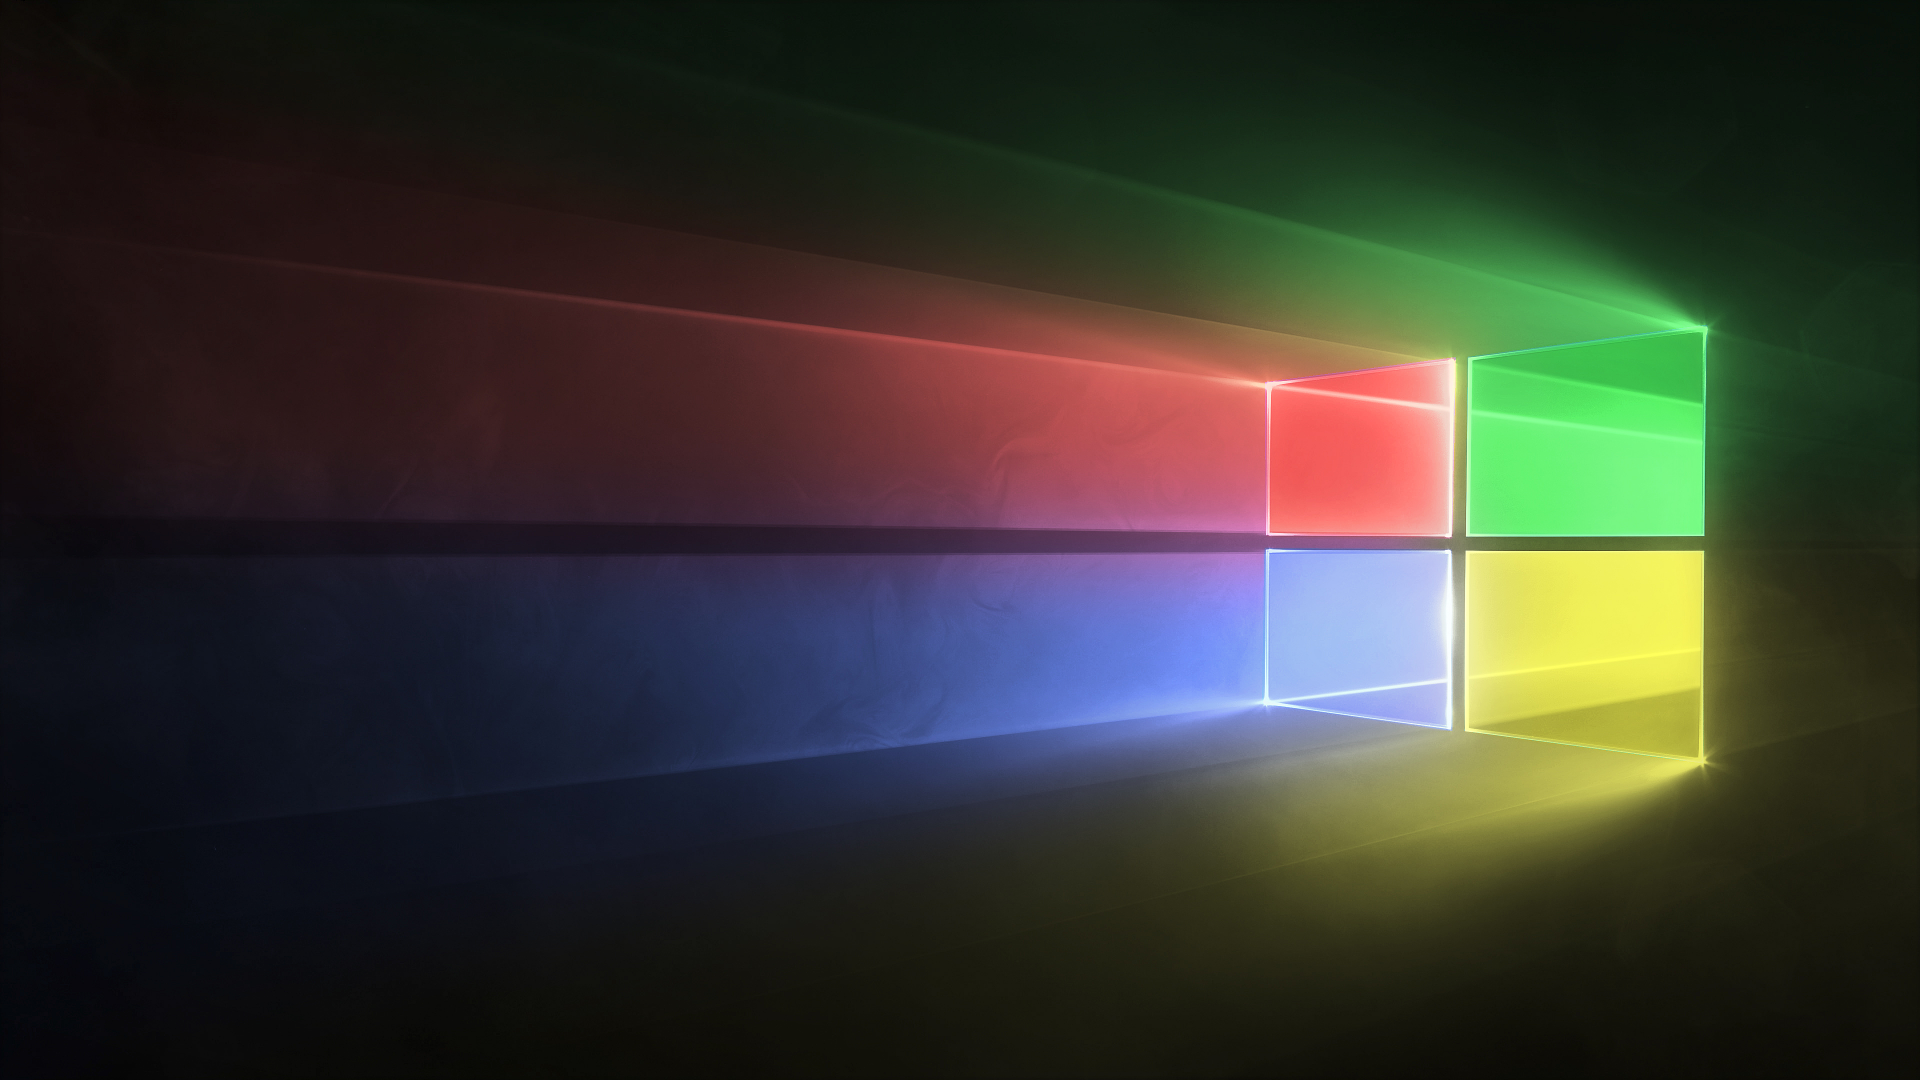 Windows 10 in classic theme